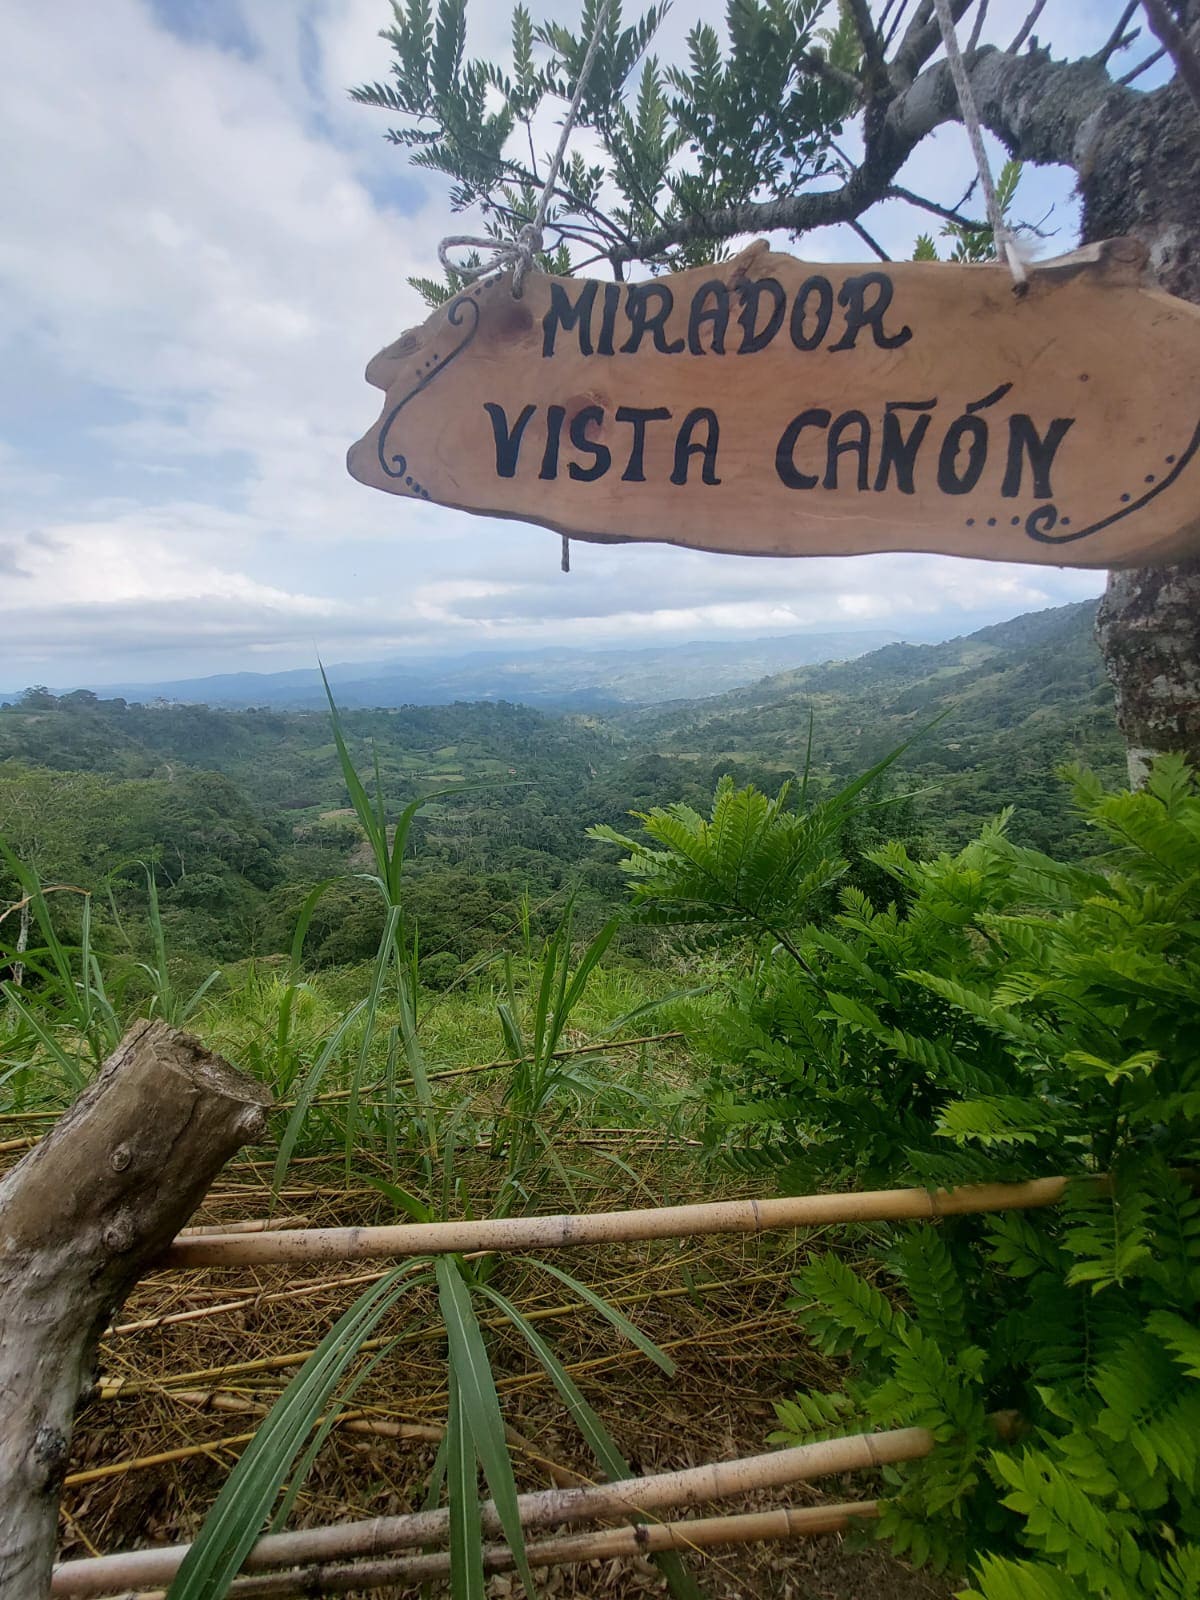 Cabaña Vista Cañon & Mirador